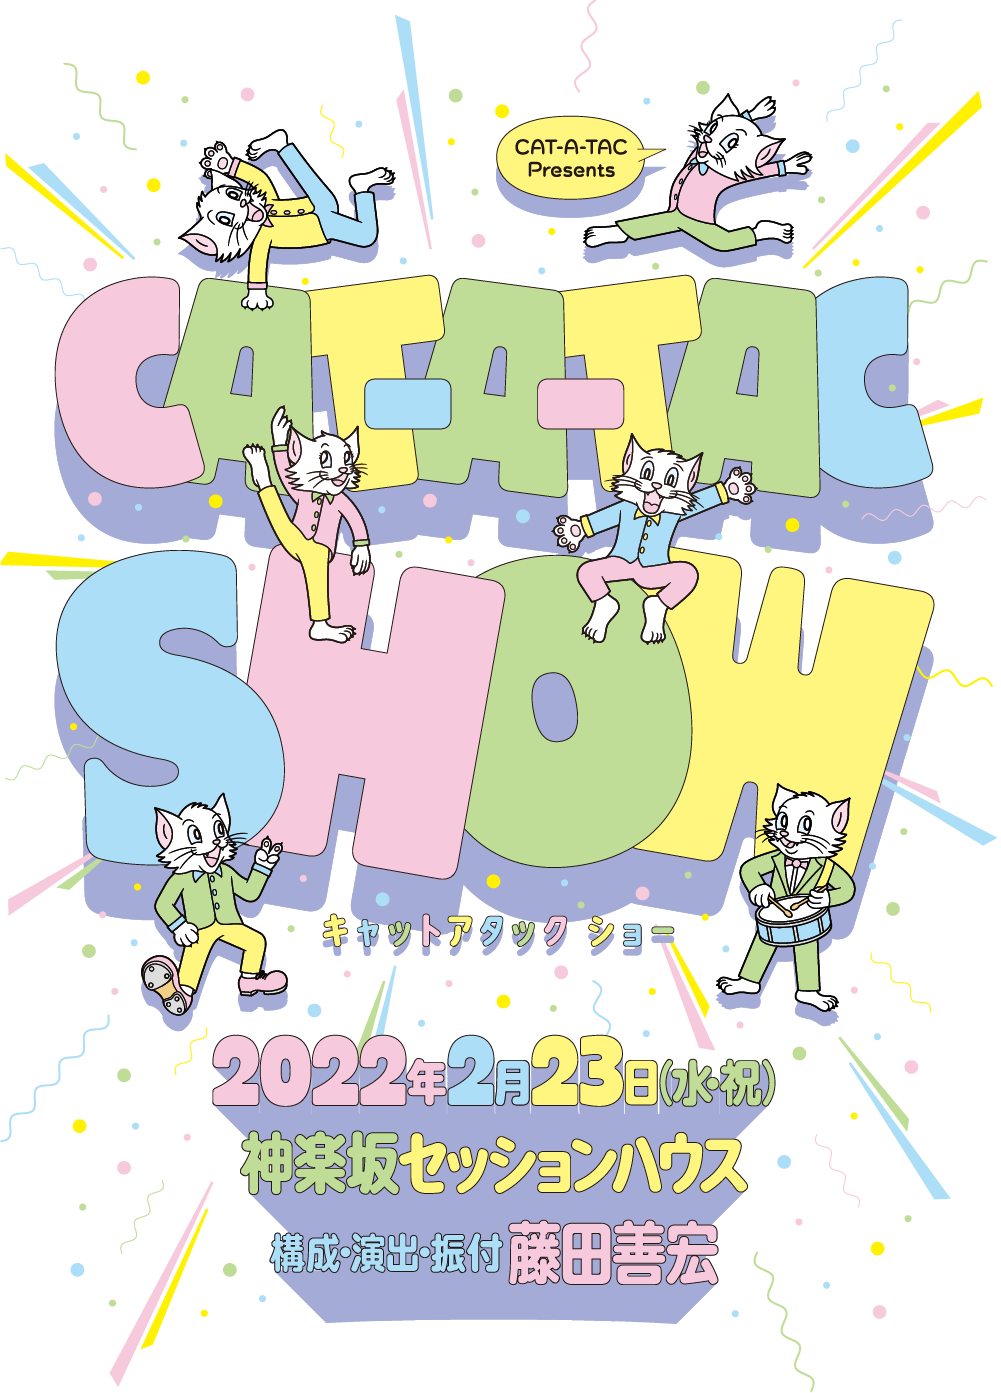 CAT-A-TAC　Presents「CAT-A-TAC SHOW」2021年9月11日（土）18:00、12日（日）12:00/16:00 会場：神楽坂セッションハウス